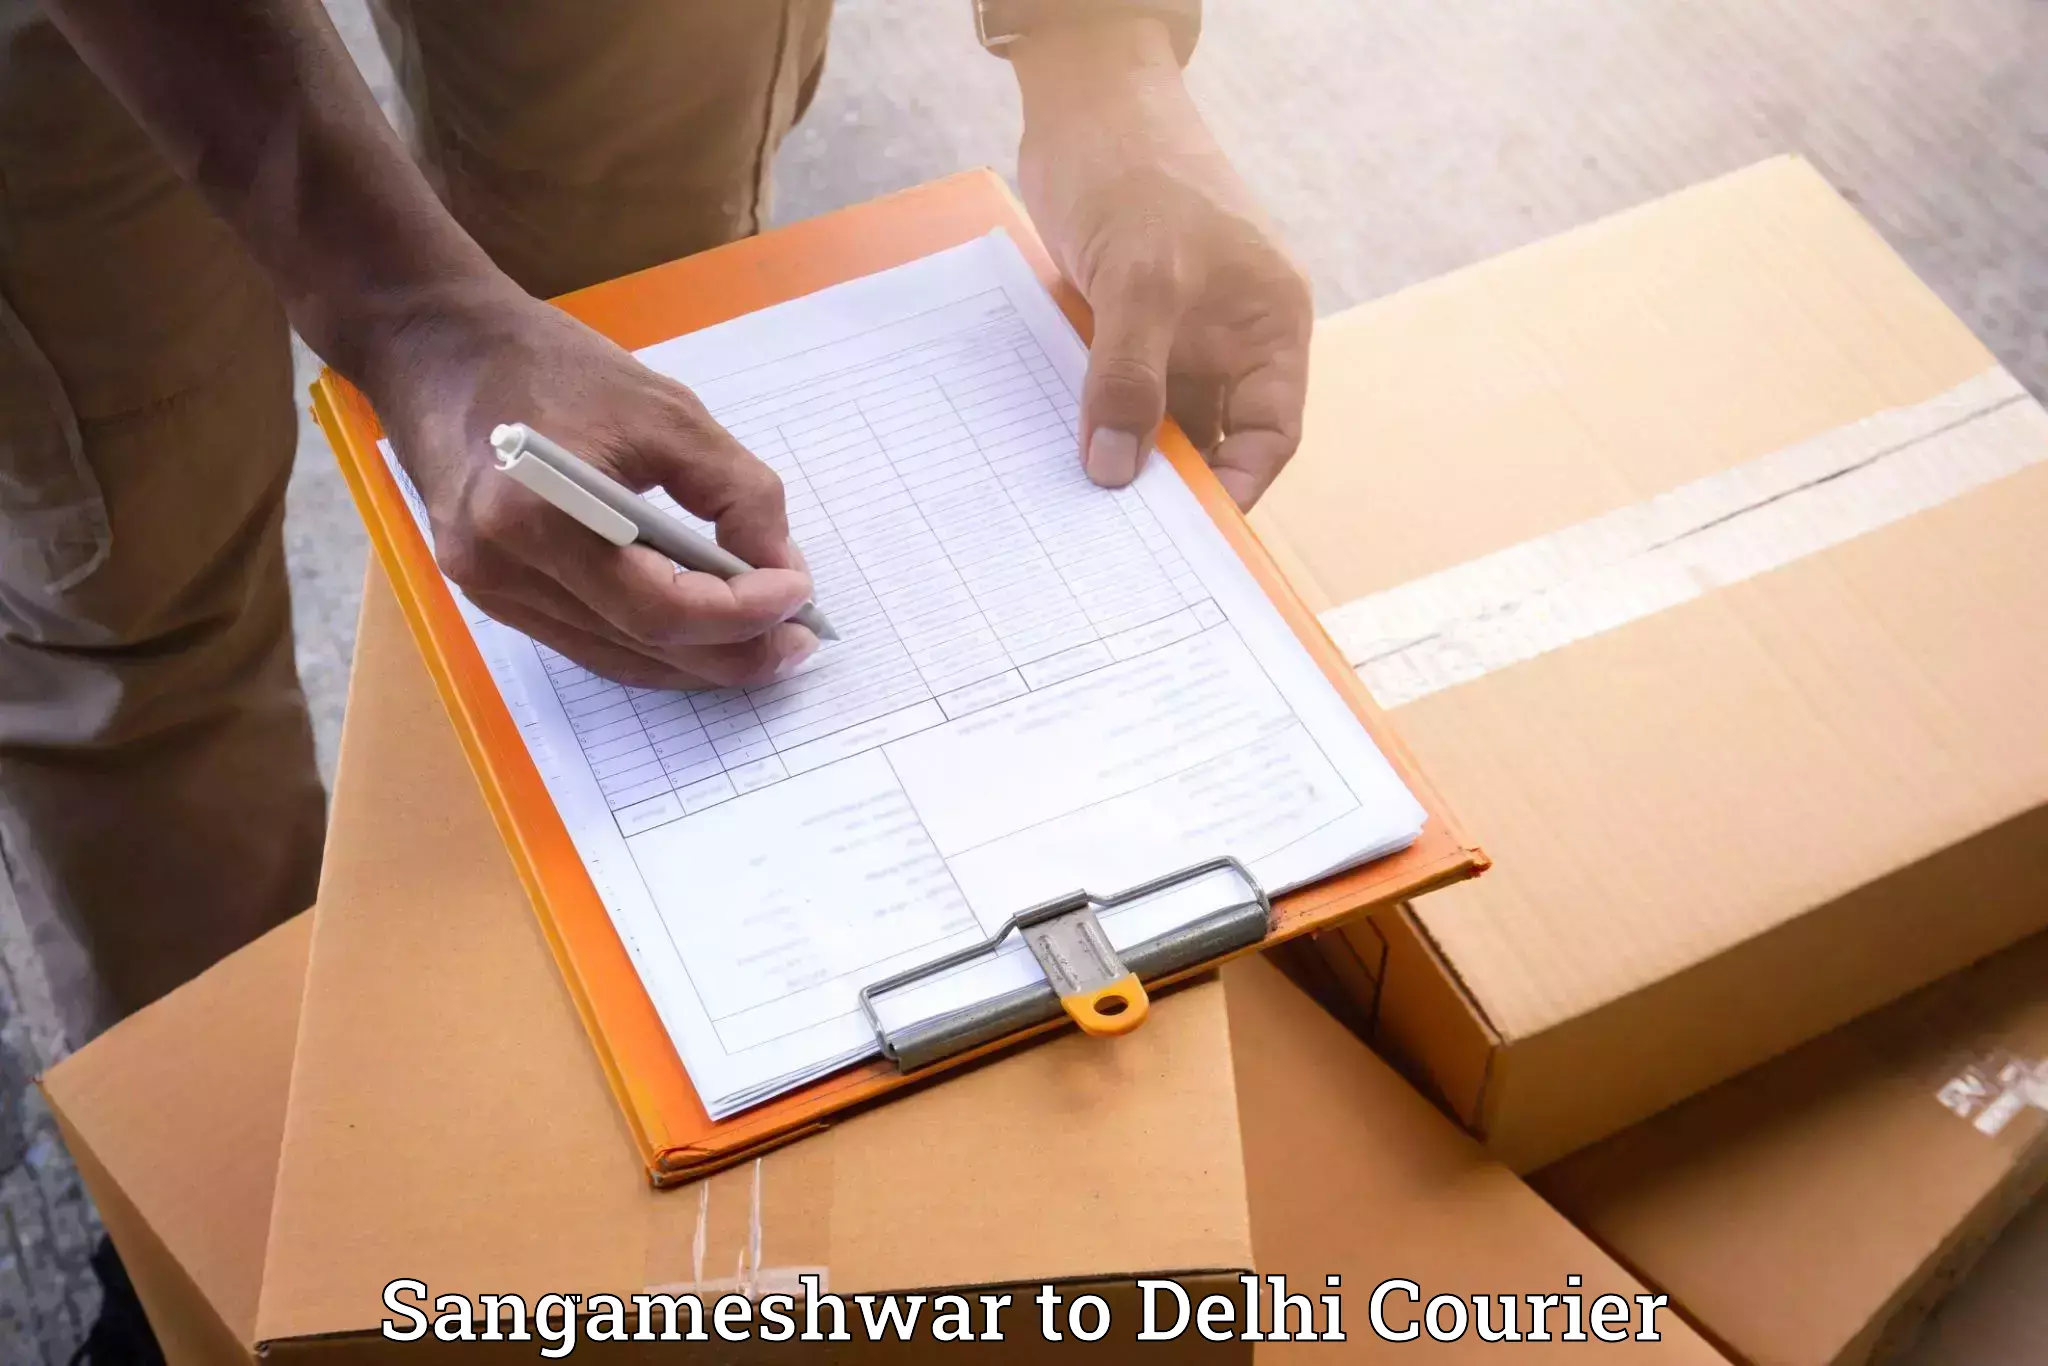 Stress-free household moving Sangameshwar to NCR